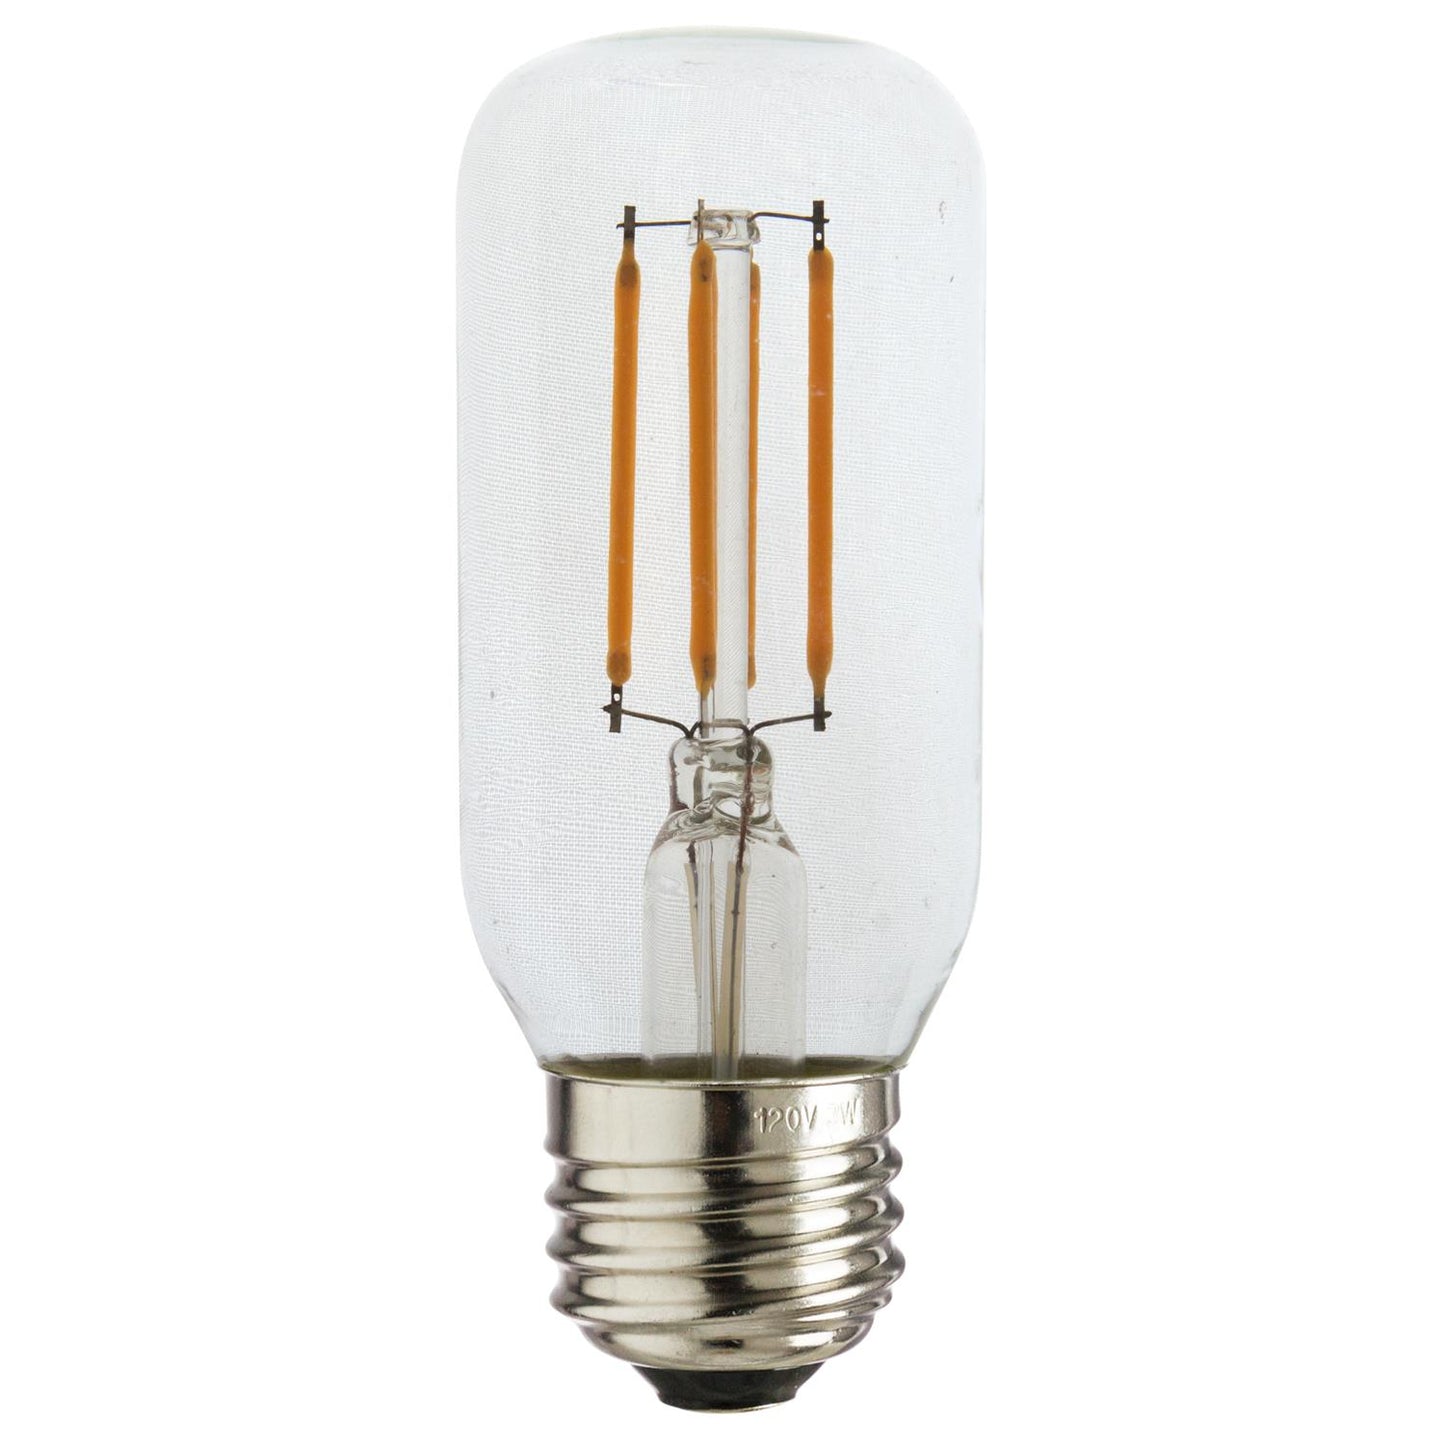 Sunlite 80892 LED Filament T12 Tube 3-Watt (40 Watt Equivalent) Clear Dimmable Light Bulb, 2700K - Warm White